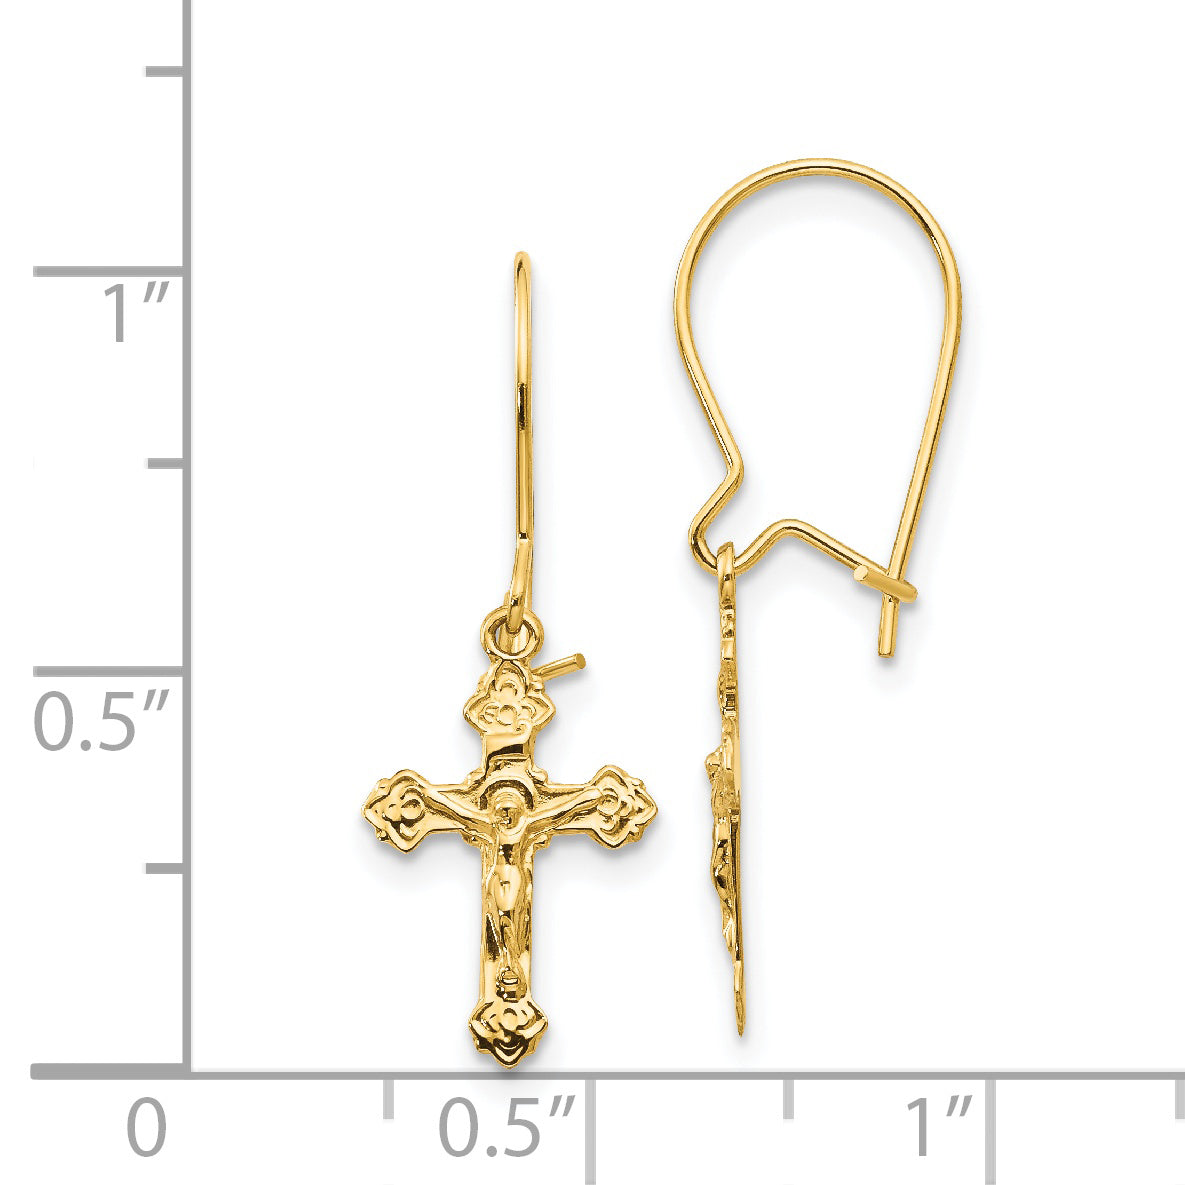 14k Polished Crucifix Earrings